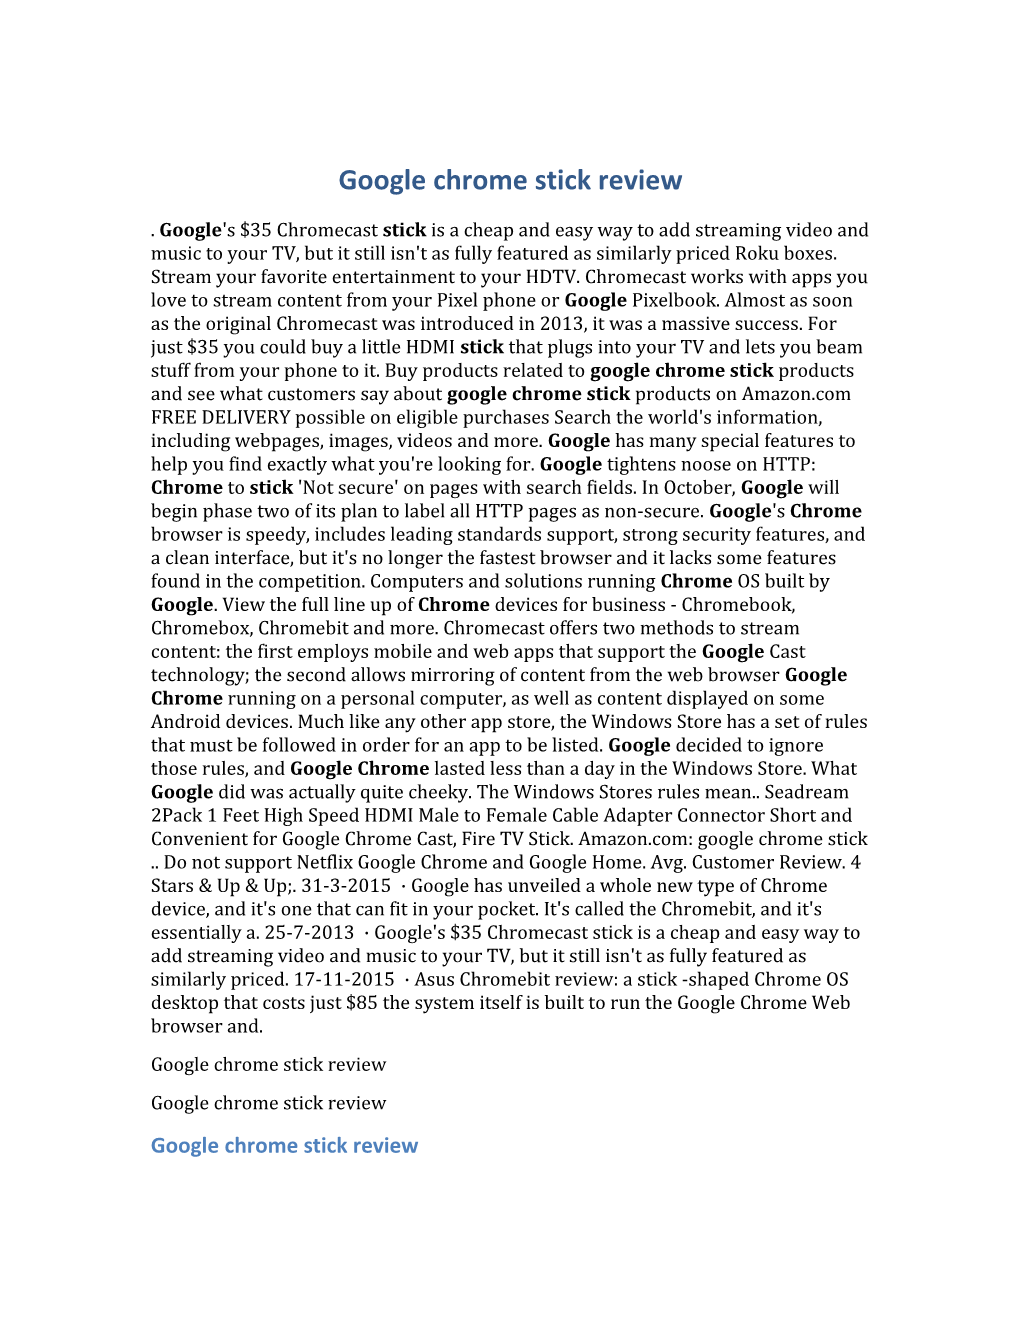 Google Chrome Stick Review